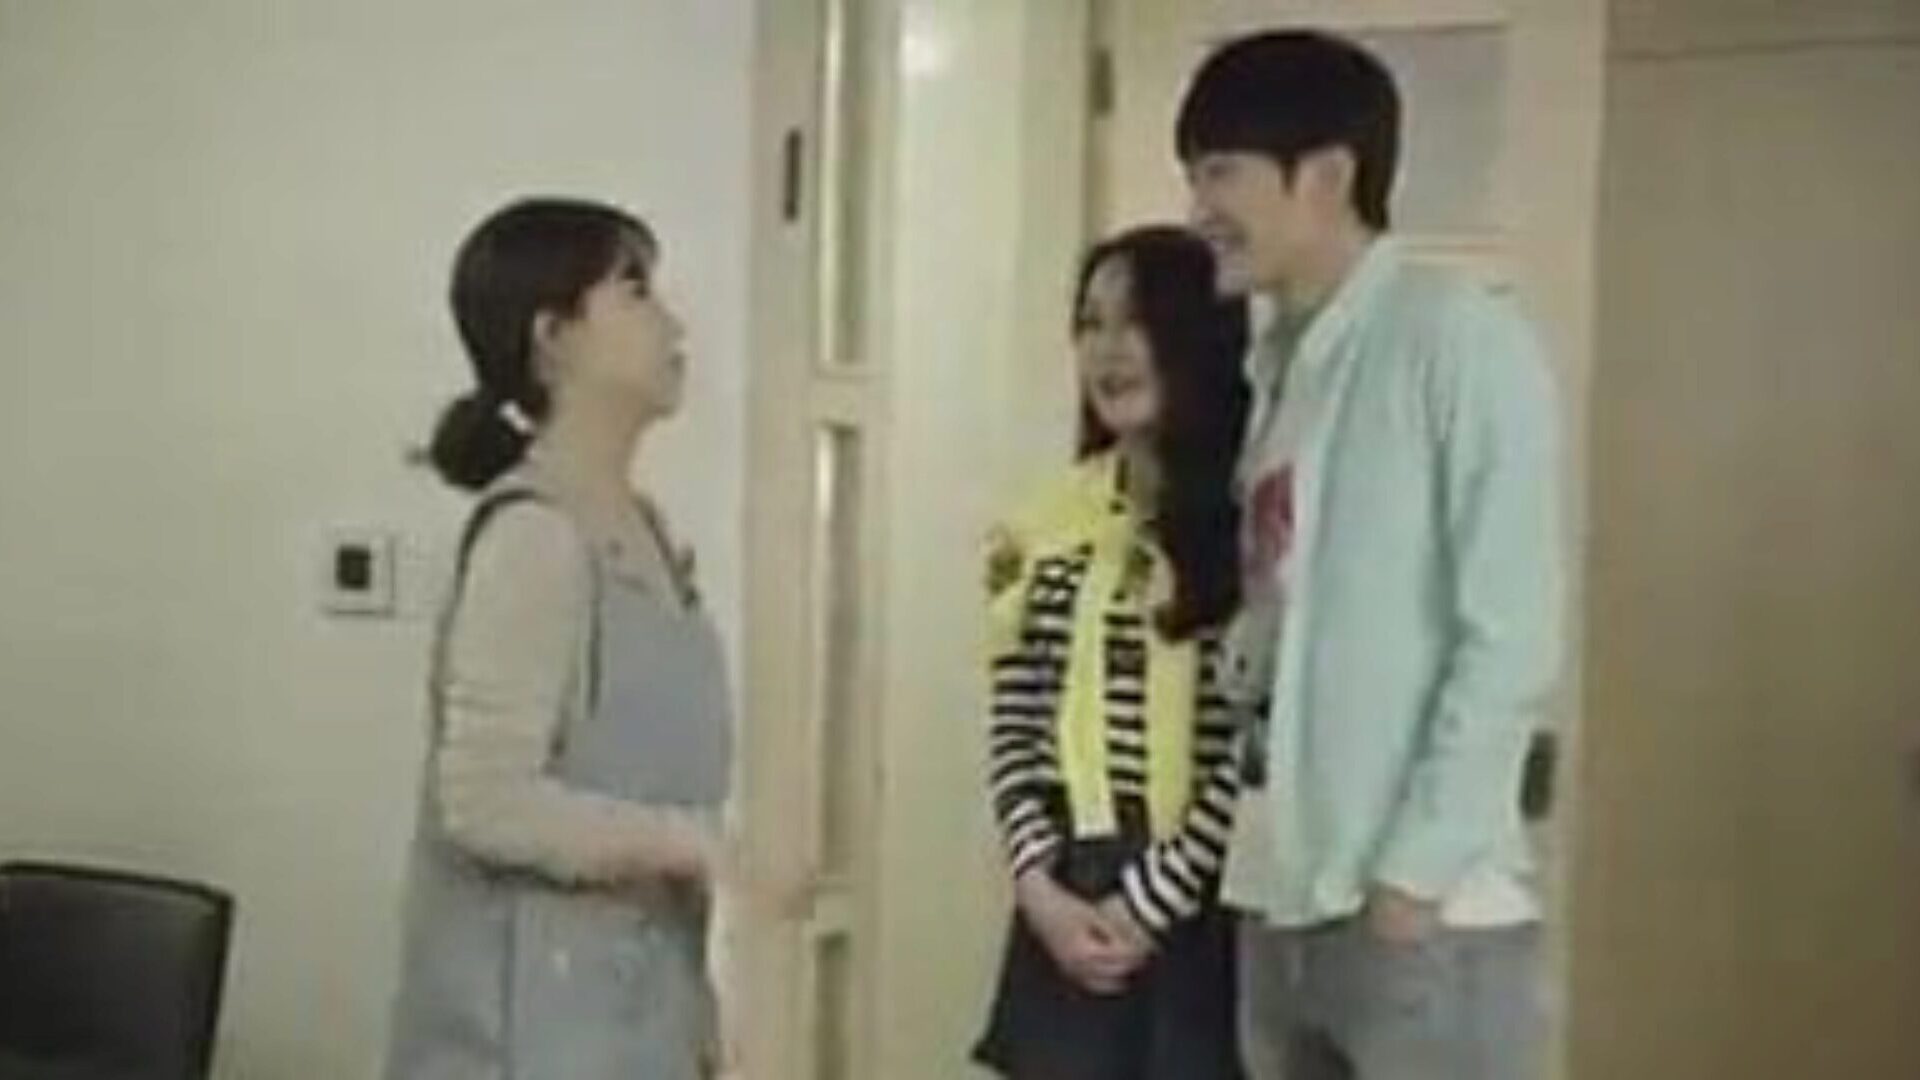 moeder en zoon's vriend neukt in de keuken - Koreaanse film Koreaanse filmclip - moeder en zoon's vriend neukt in de keuken terwijl schoonzoon neukt met zijn vriendin in de kamer